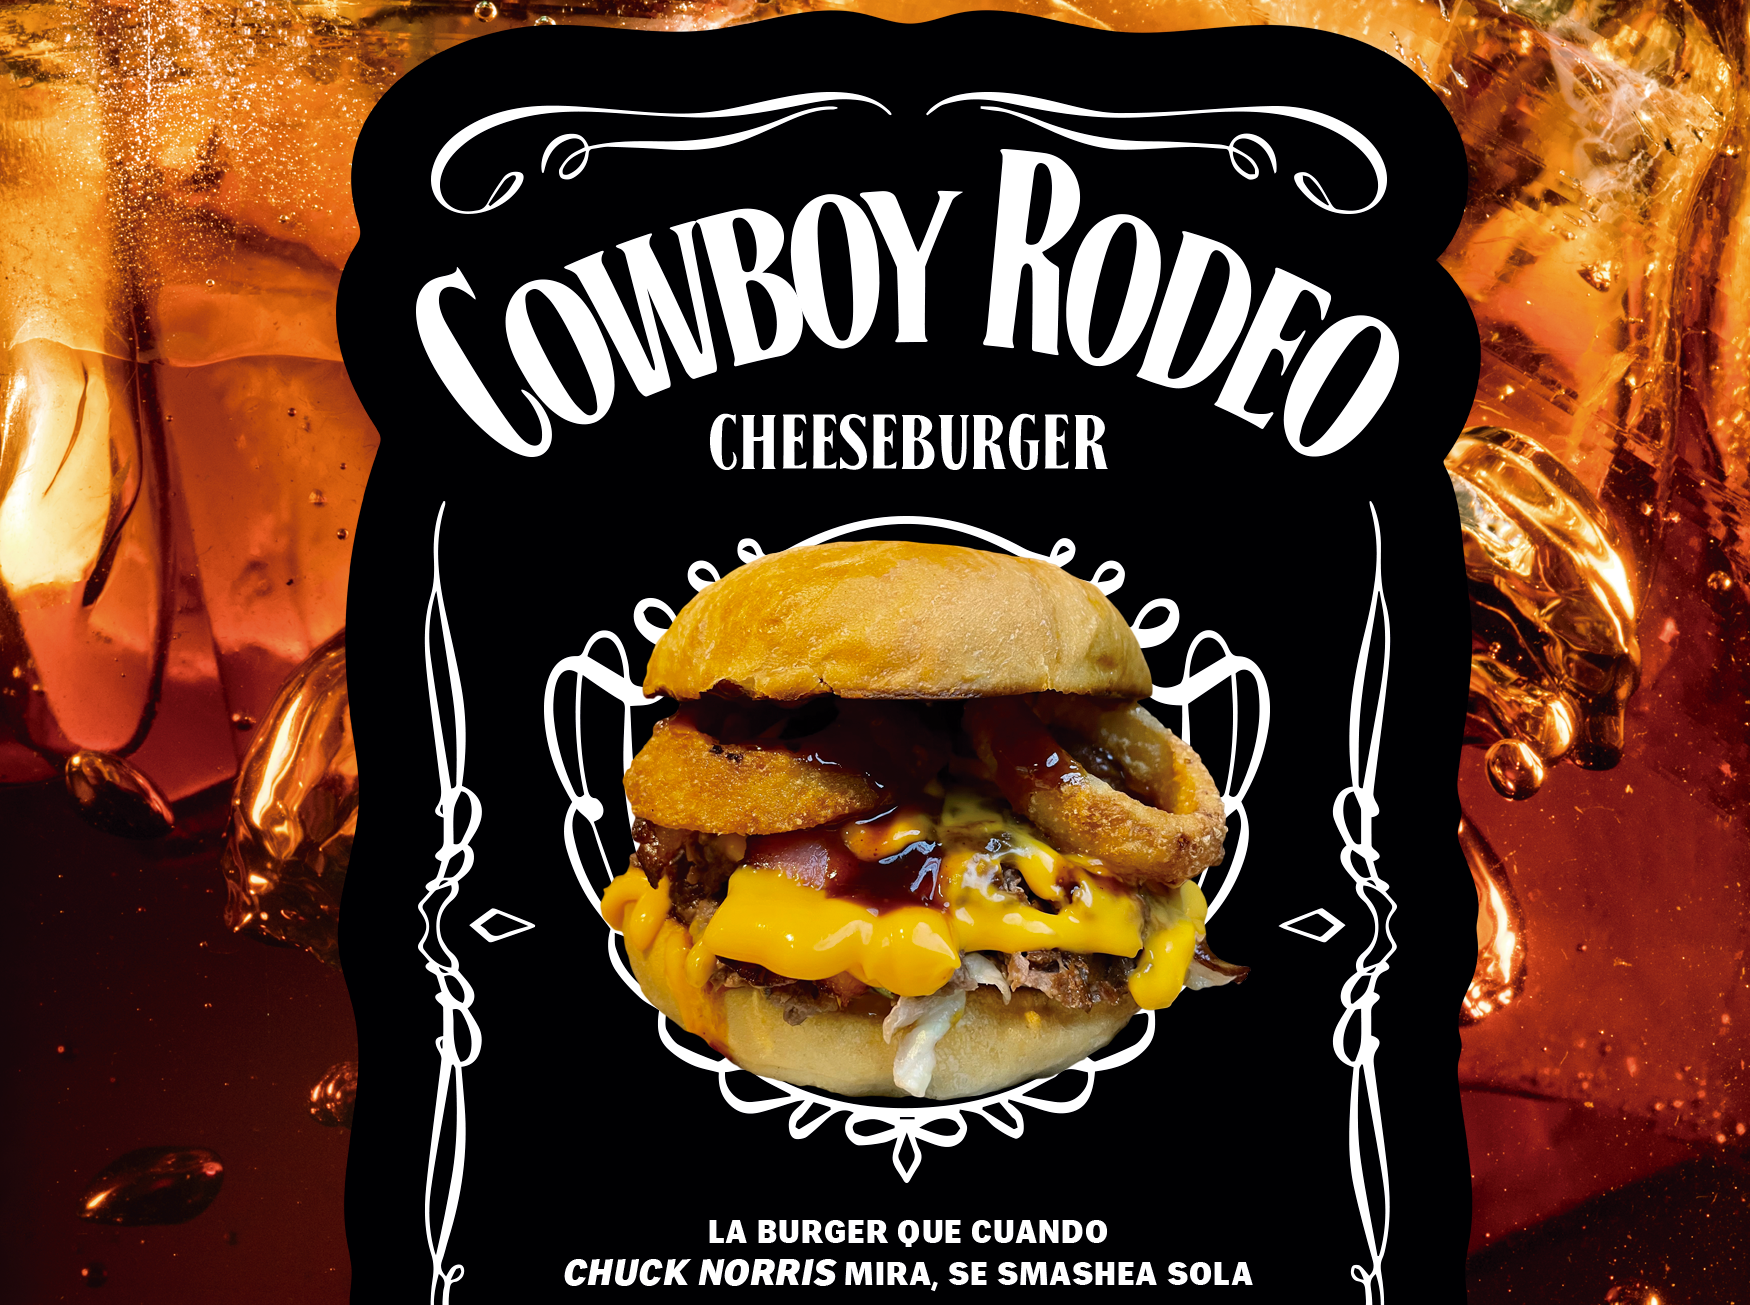 la nueva canalla del mes cowboy rodeo cheeseburger smashed buerger en Pamplona restaurante de hamburguesas en Navarra